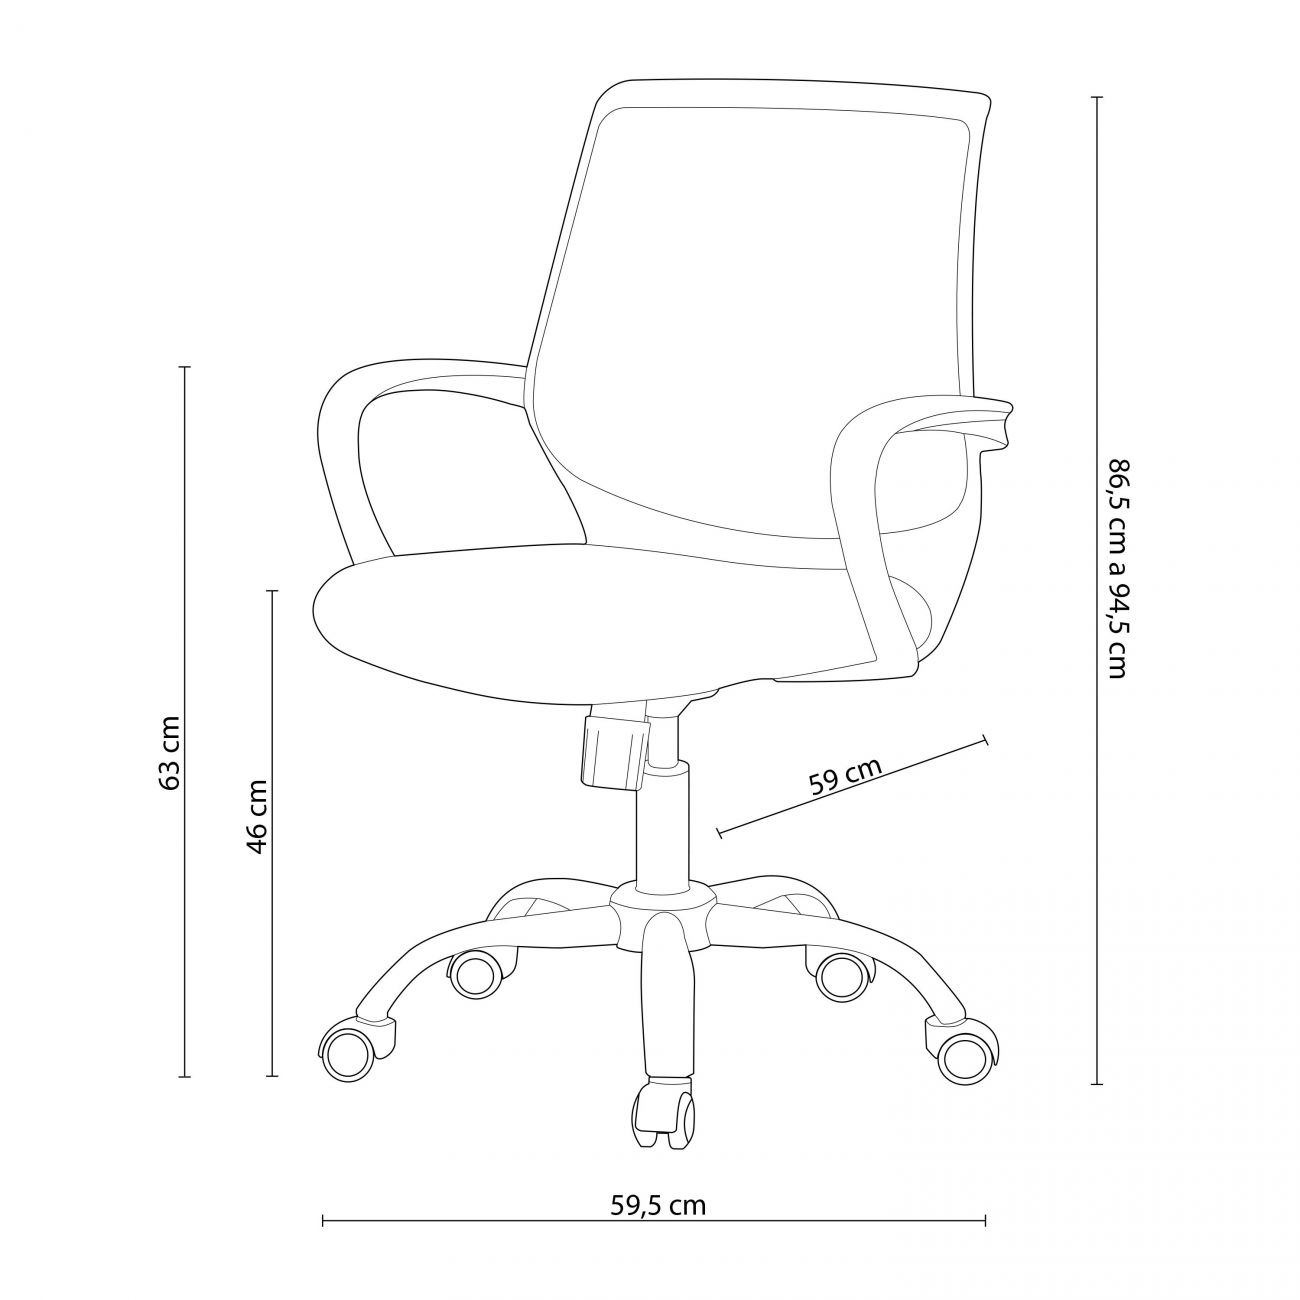 Silla de oficina, silla de escritorio, sillas de escritorio